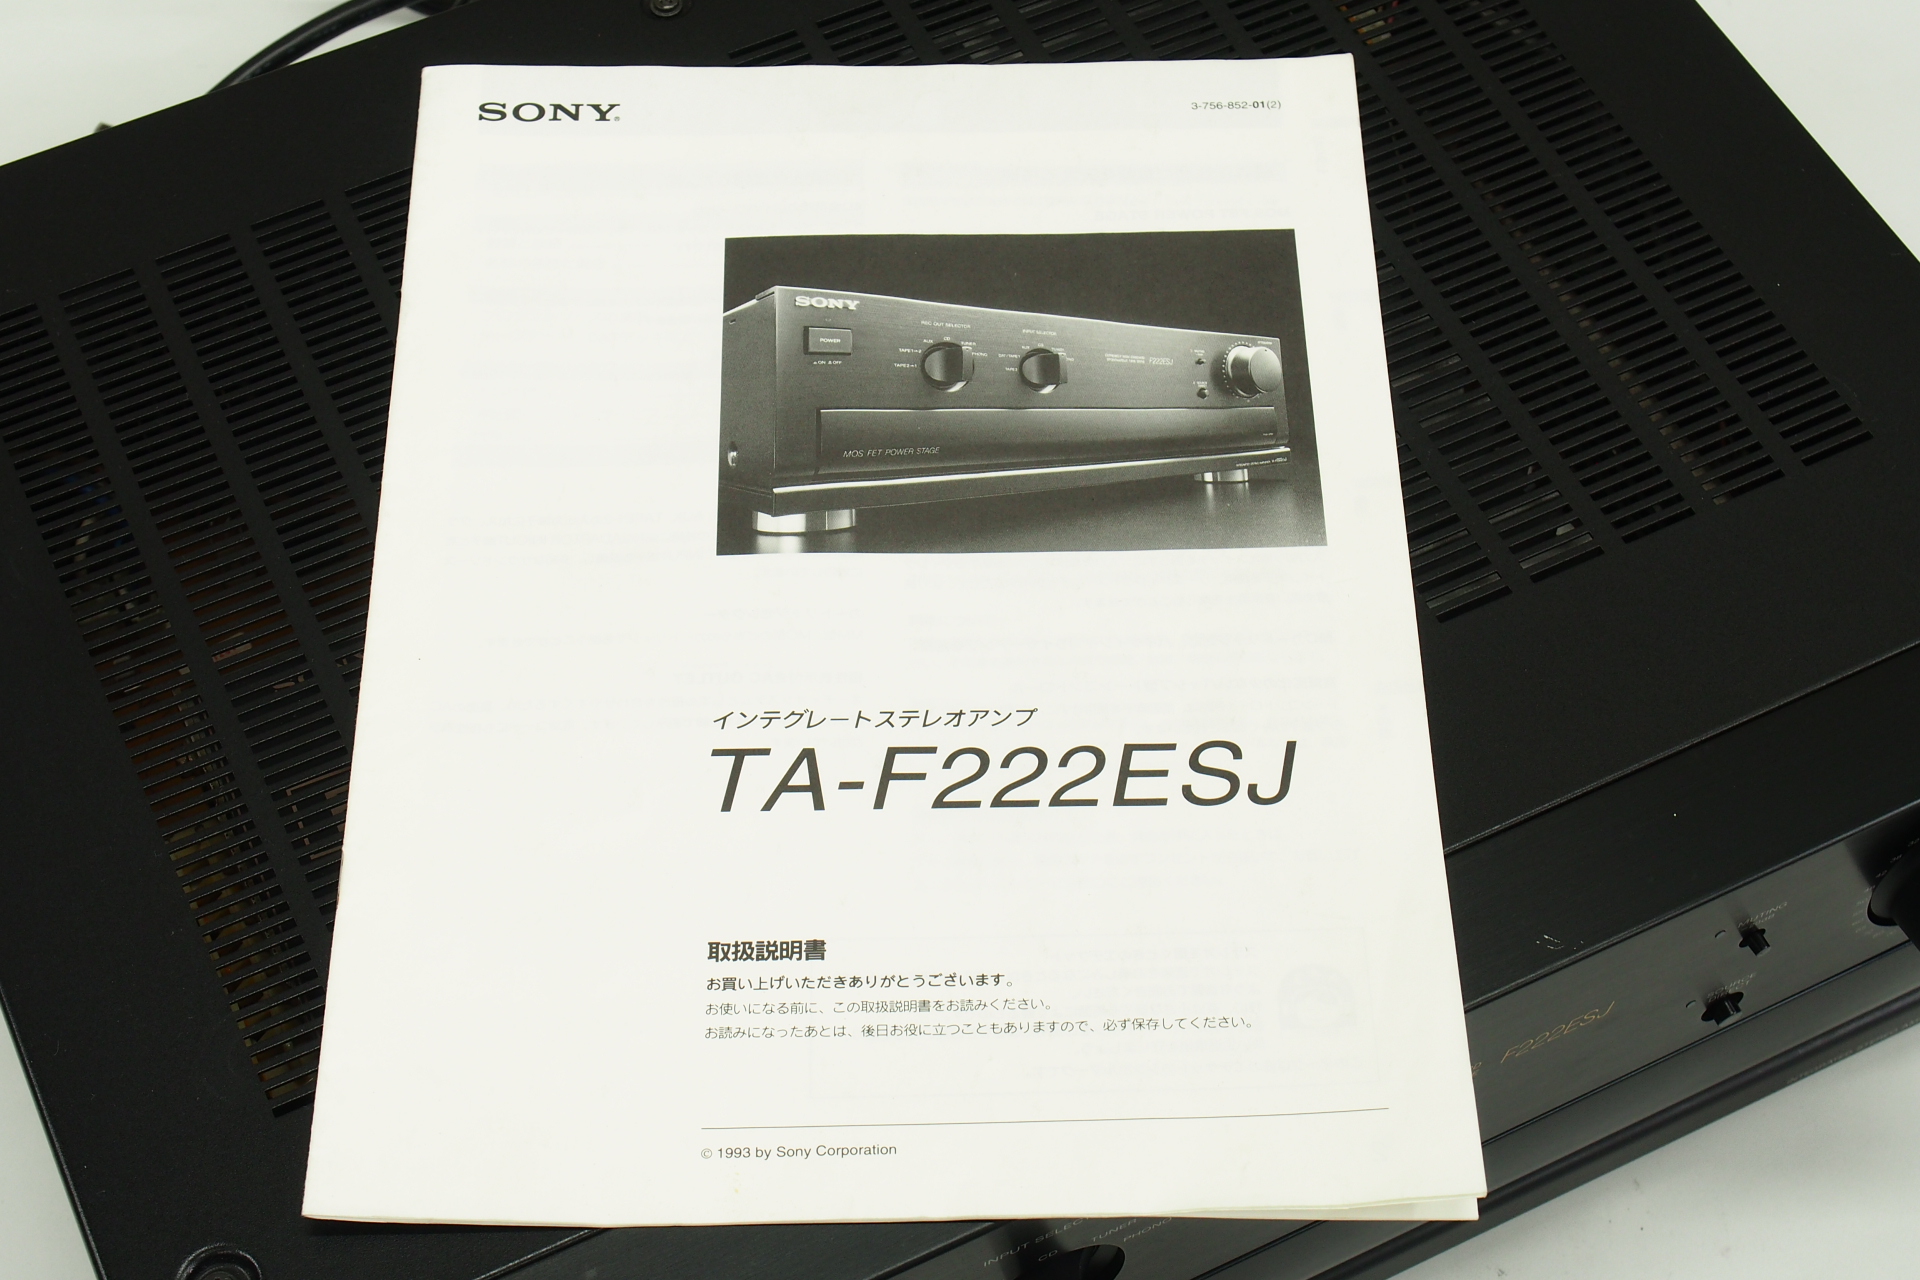 アバックWEB-SHOP / 【中古】SONY TA-F222ESJ【コード01-09034 